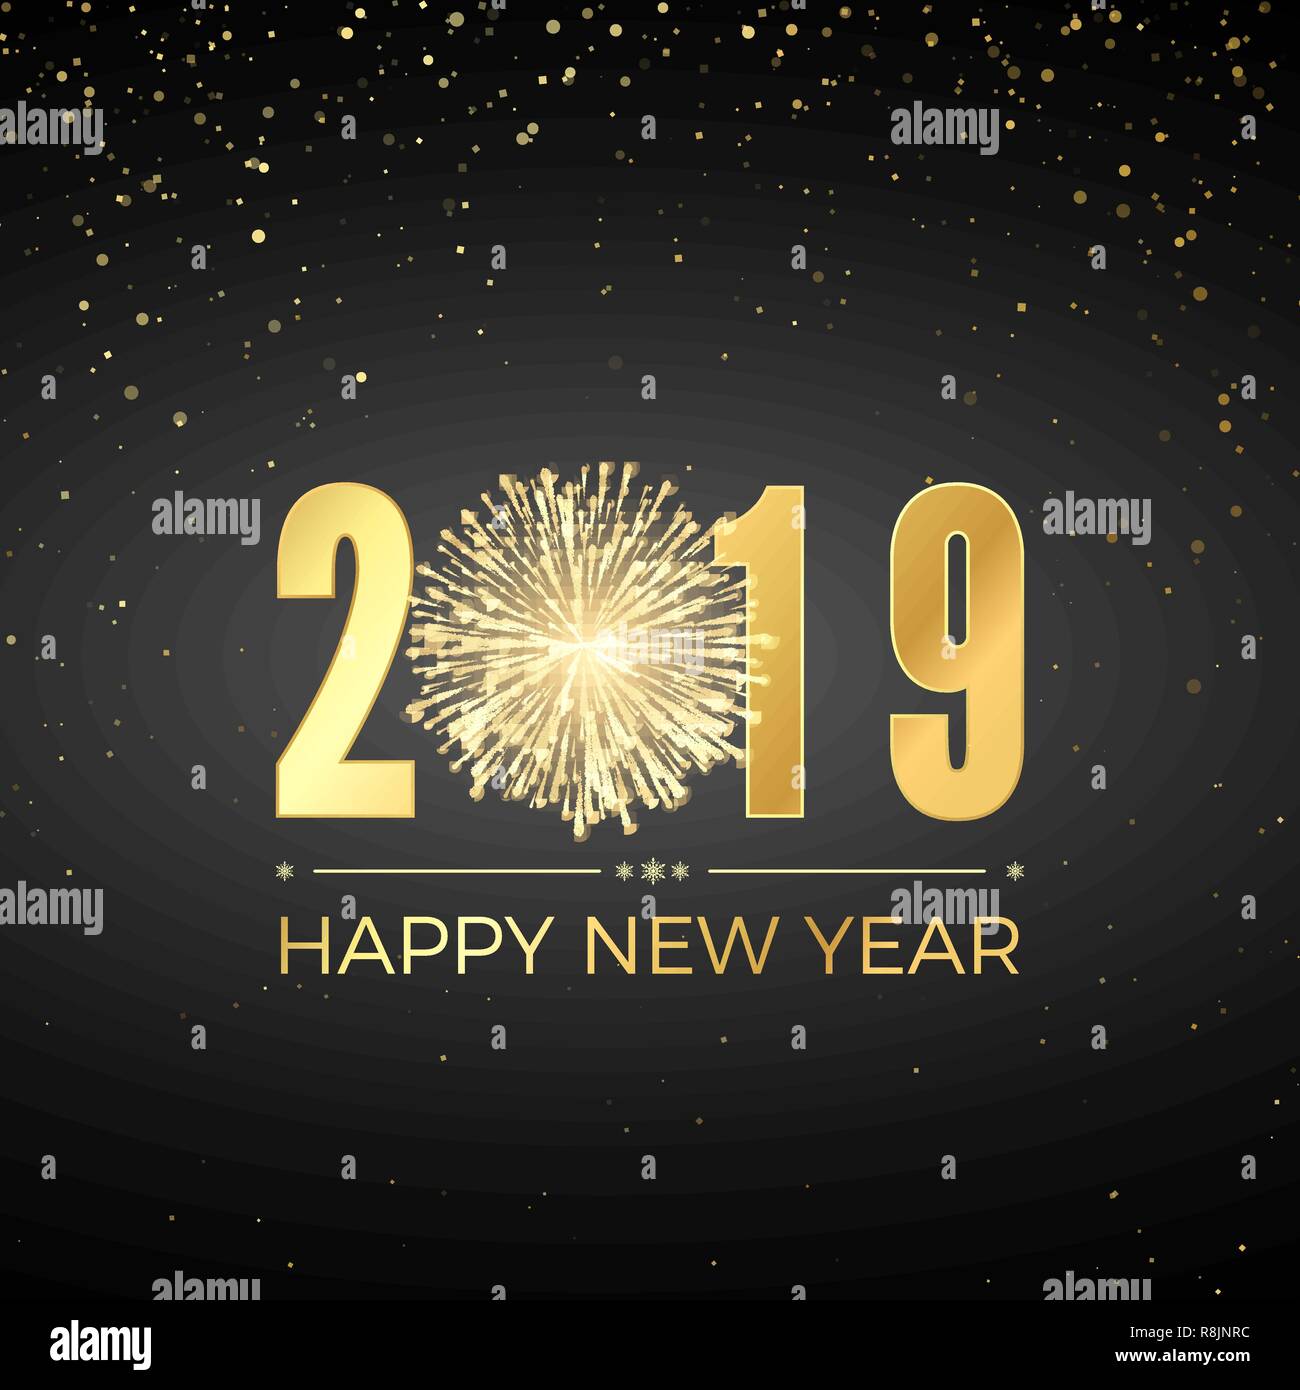 Frohes Neues Jahr 2019. Grußkarte text Design. Neue Jahre Fahne mit goldenen Zahlen und Feuerwerk. Vector Illustration Stock Vektor